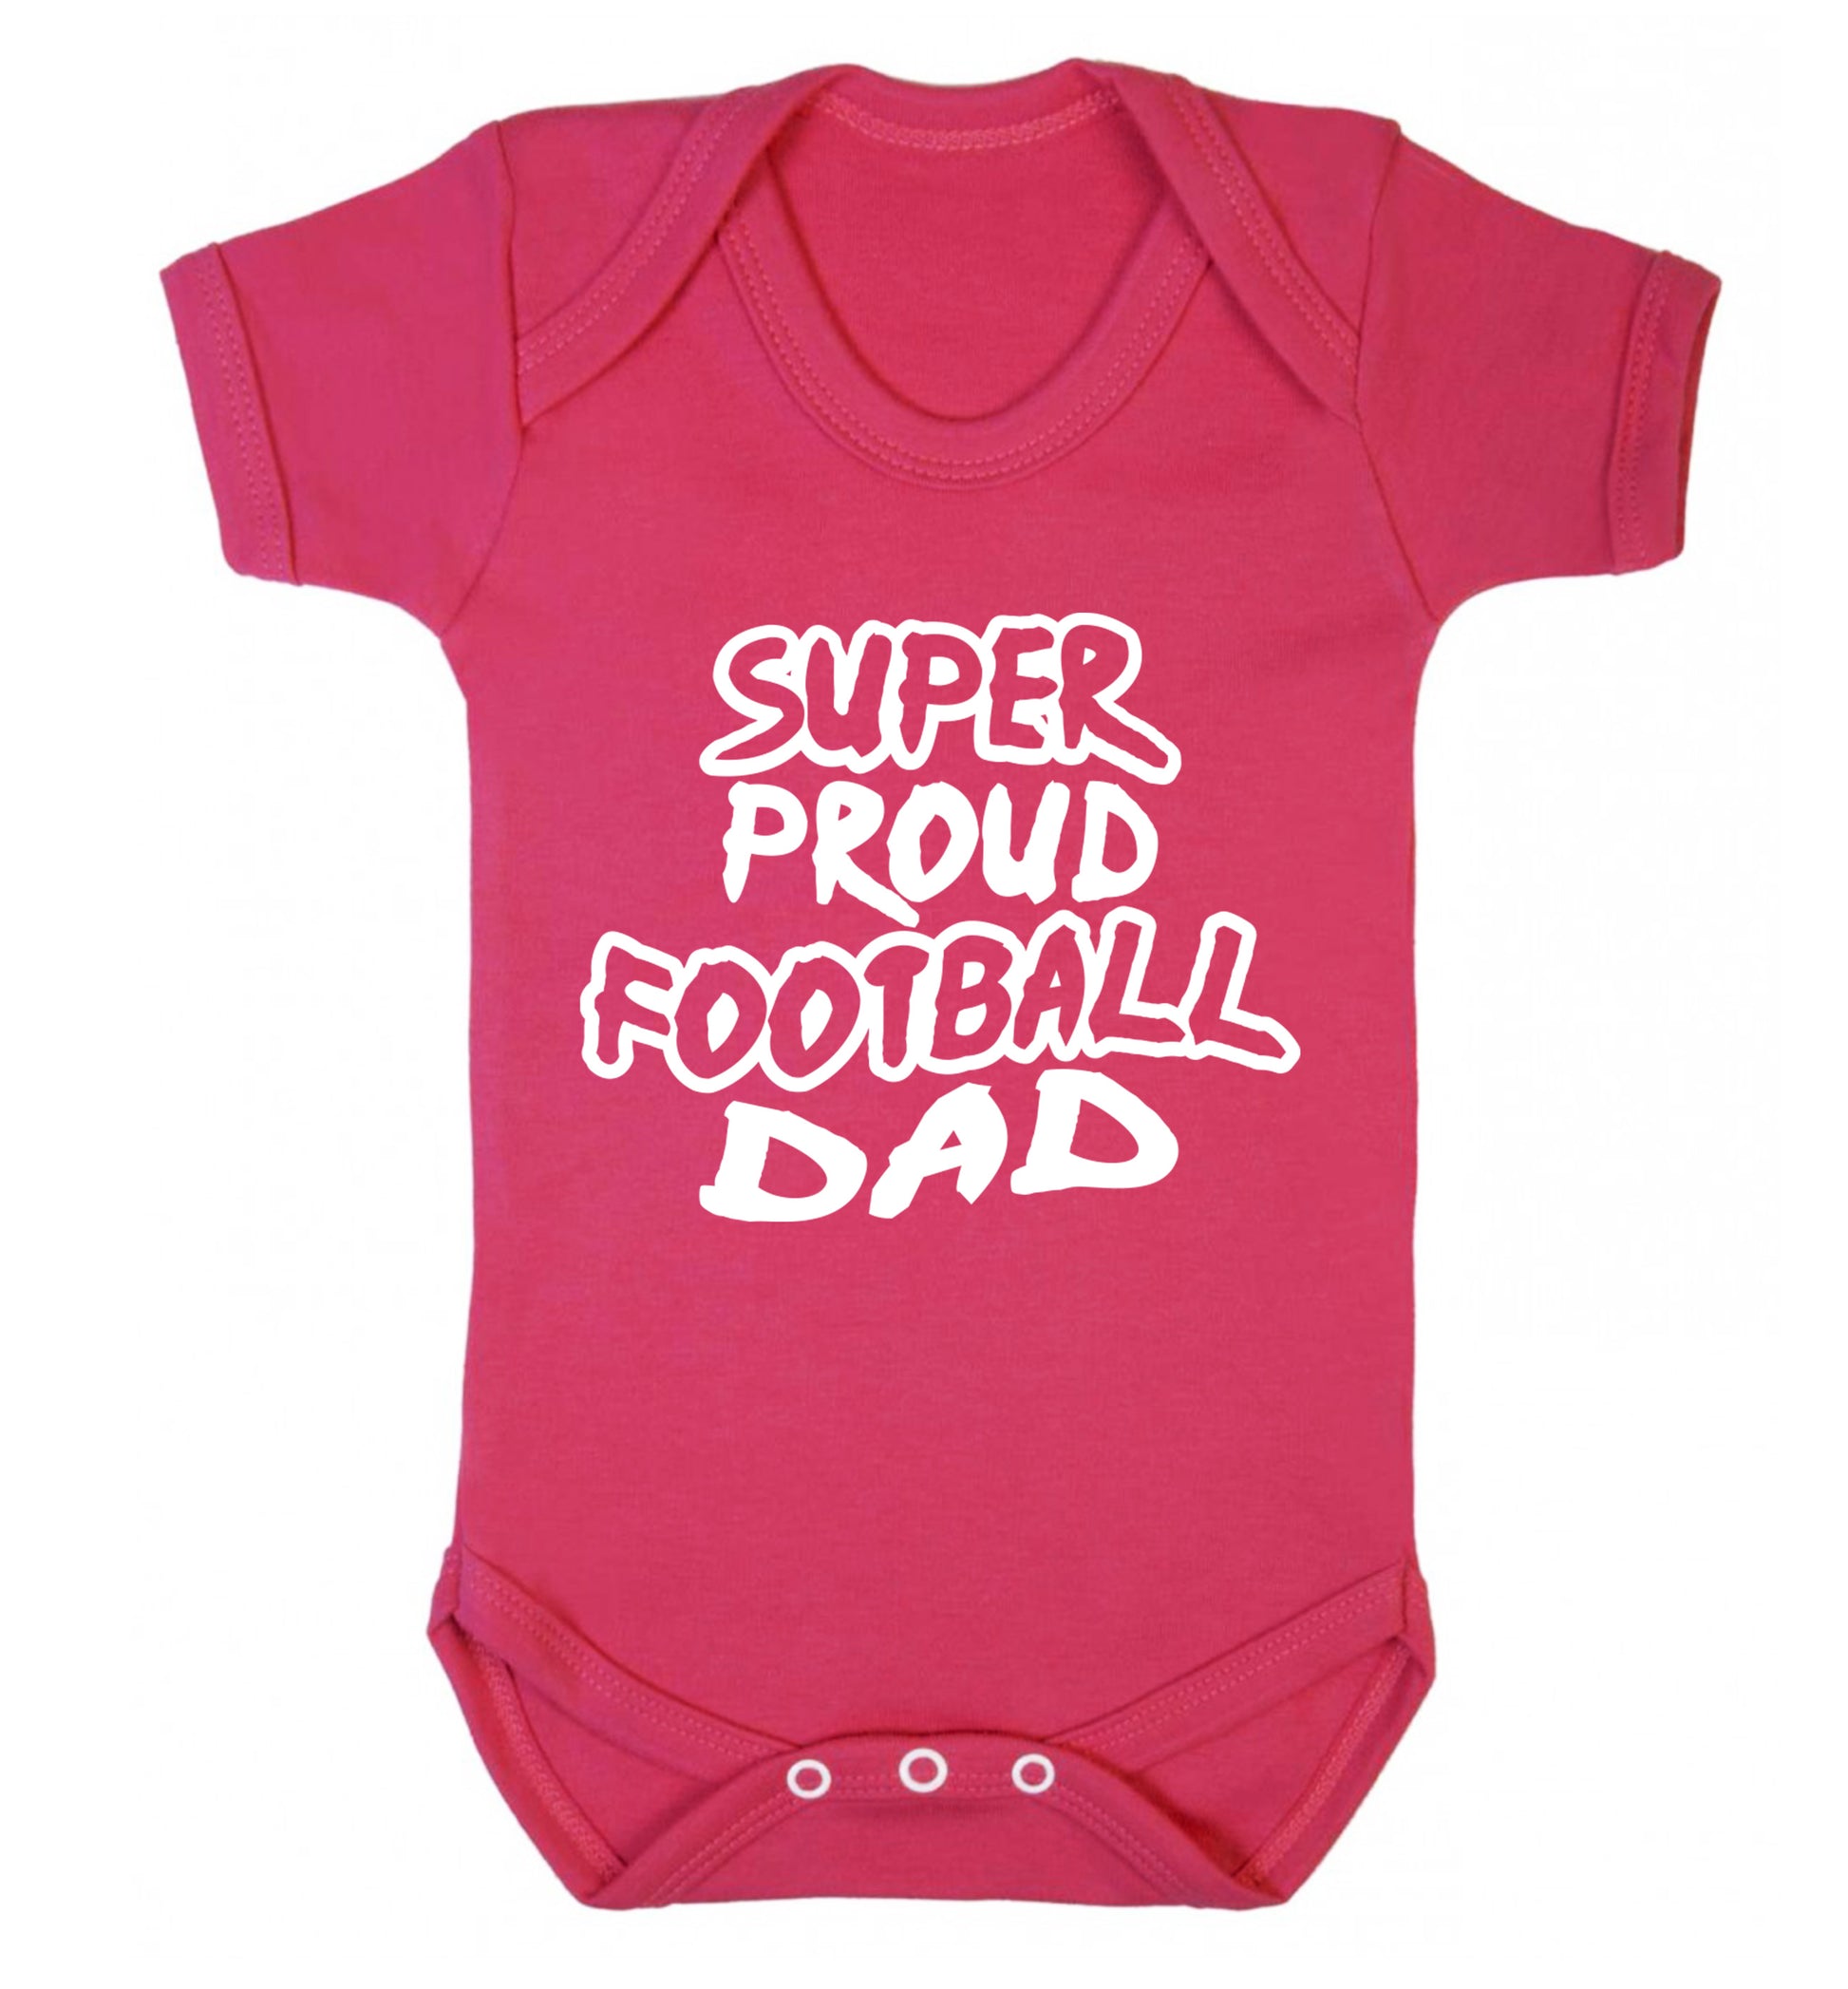 Super proud football dad Baby Vest dark pink 18-24 months